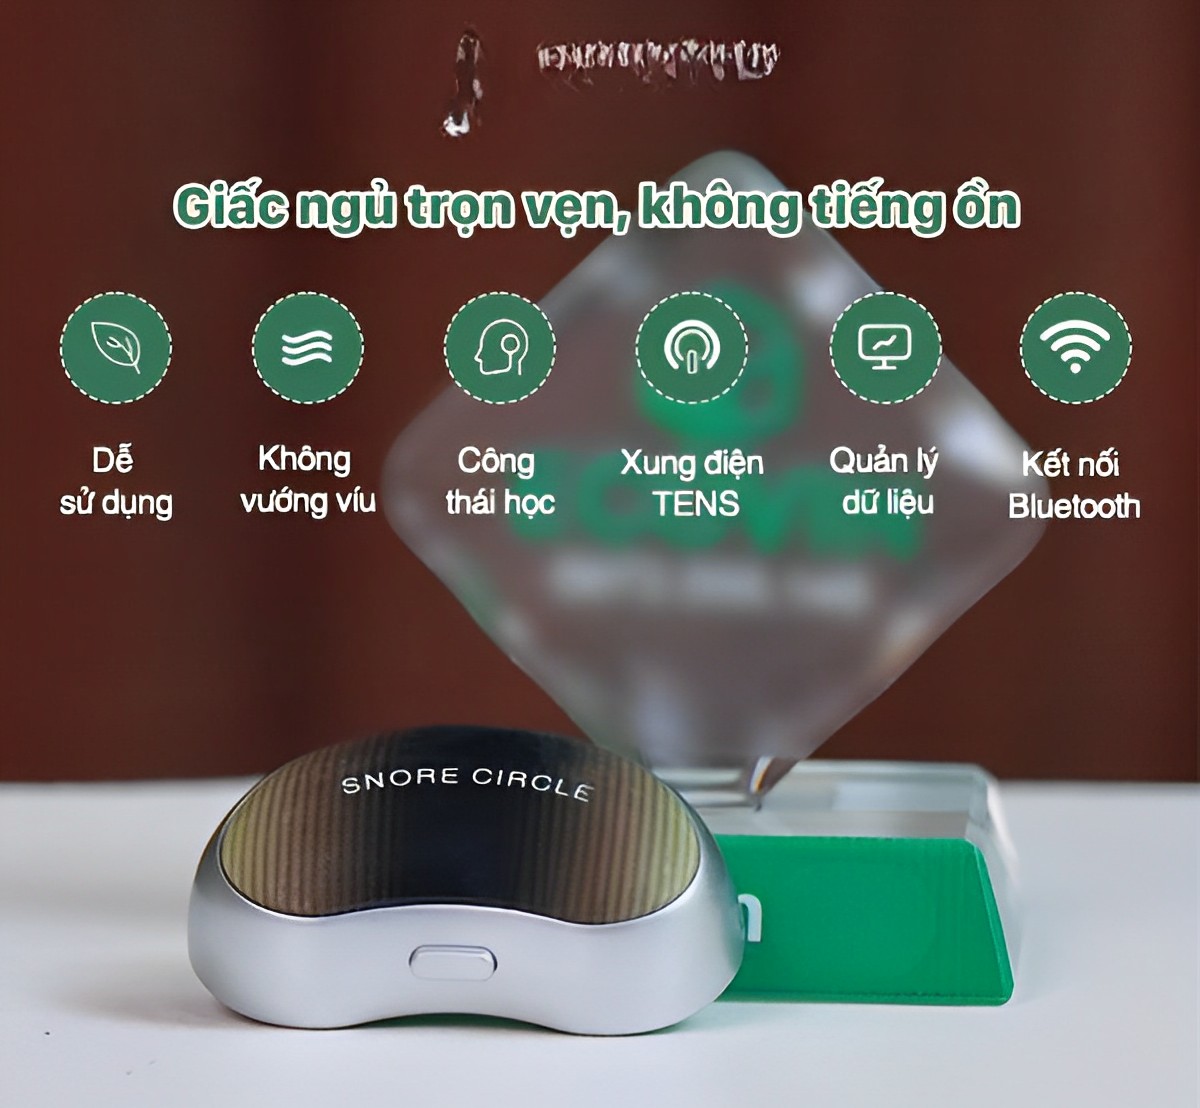 Máy chống ngáy ngủ,thiết bị chống ngáy ngủ Snore Circle HT56,dụng cụ chống ngáy với xung tần số thấp,quản lý bằng app dễ dàng cho bạn giấc ngủ sâu và trọn vẹn